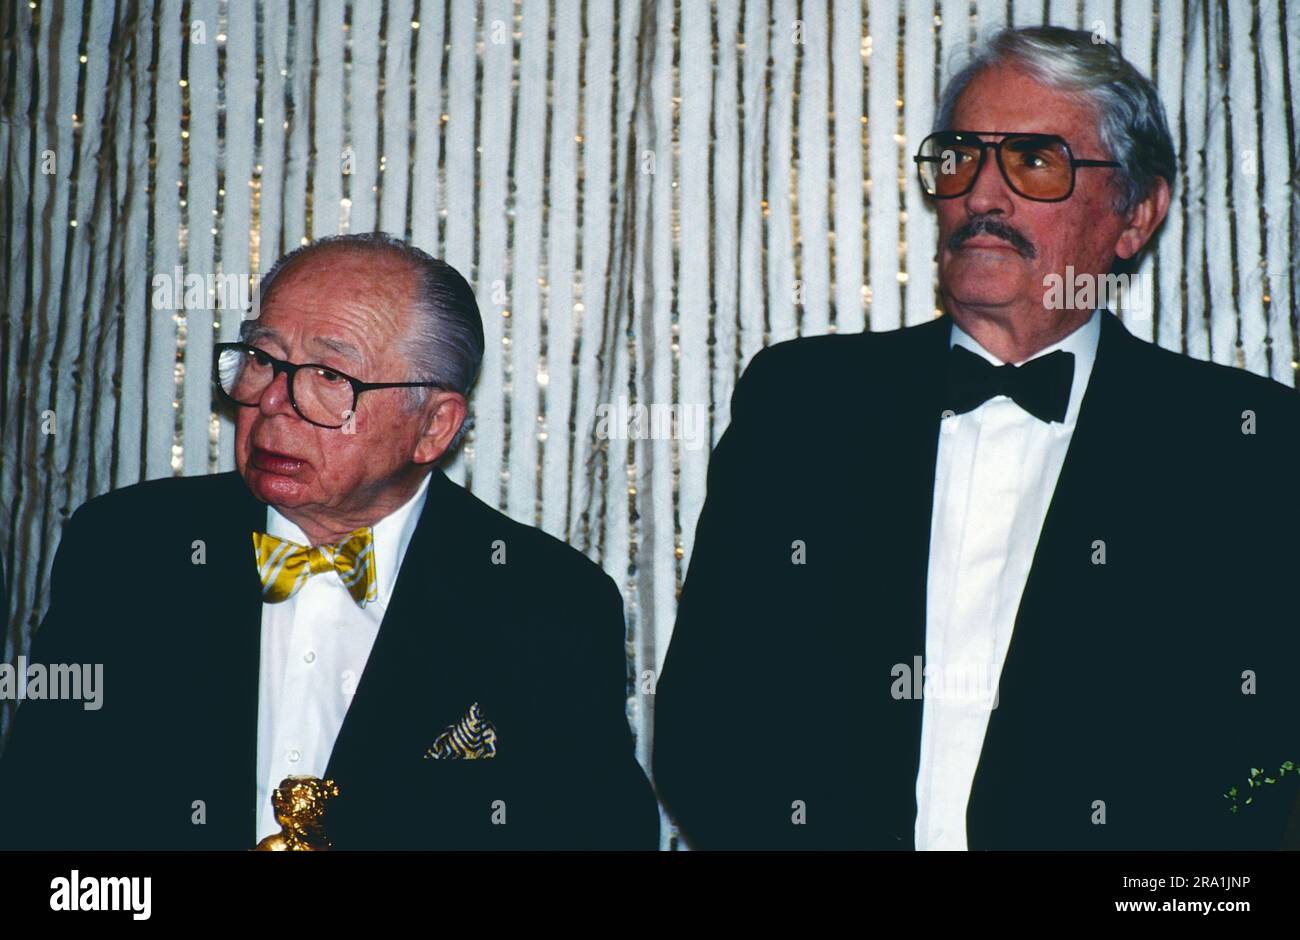 Filmregisseur Billy Wilder und der amerikanische Schauspieler Gregory Peck bei den Internationalen Filmfestspielen Berlin, der Berlinale 1993, Wo ihnen der Goldene Ehrenbär für das Lebenswerk verliehen wurde. Foto Stock